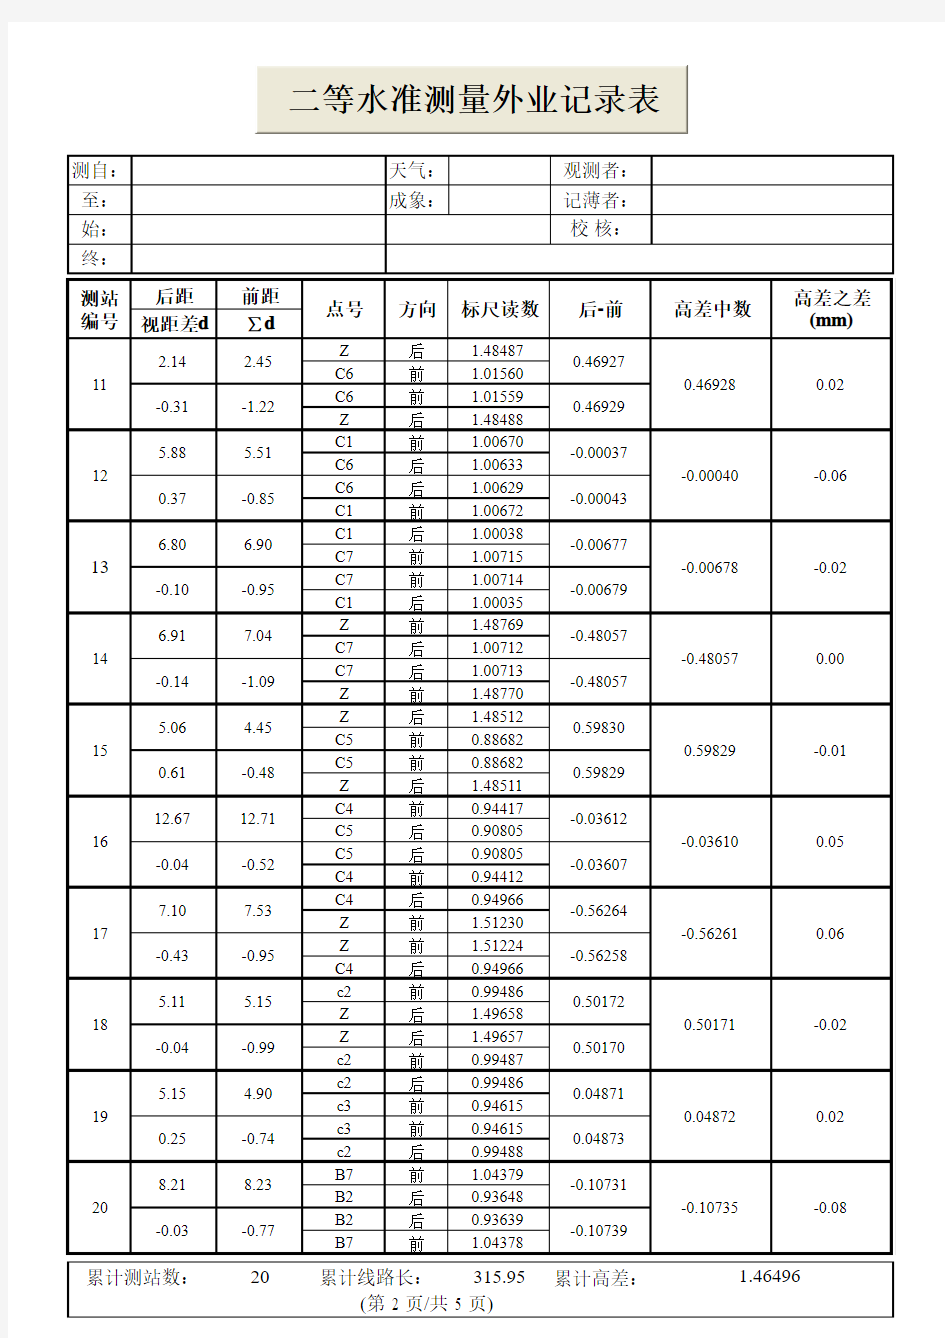 二等水准测量外业记录表(后前前后_前后后前)_DL-501_CSV-1_(学校专用版)_V1.0